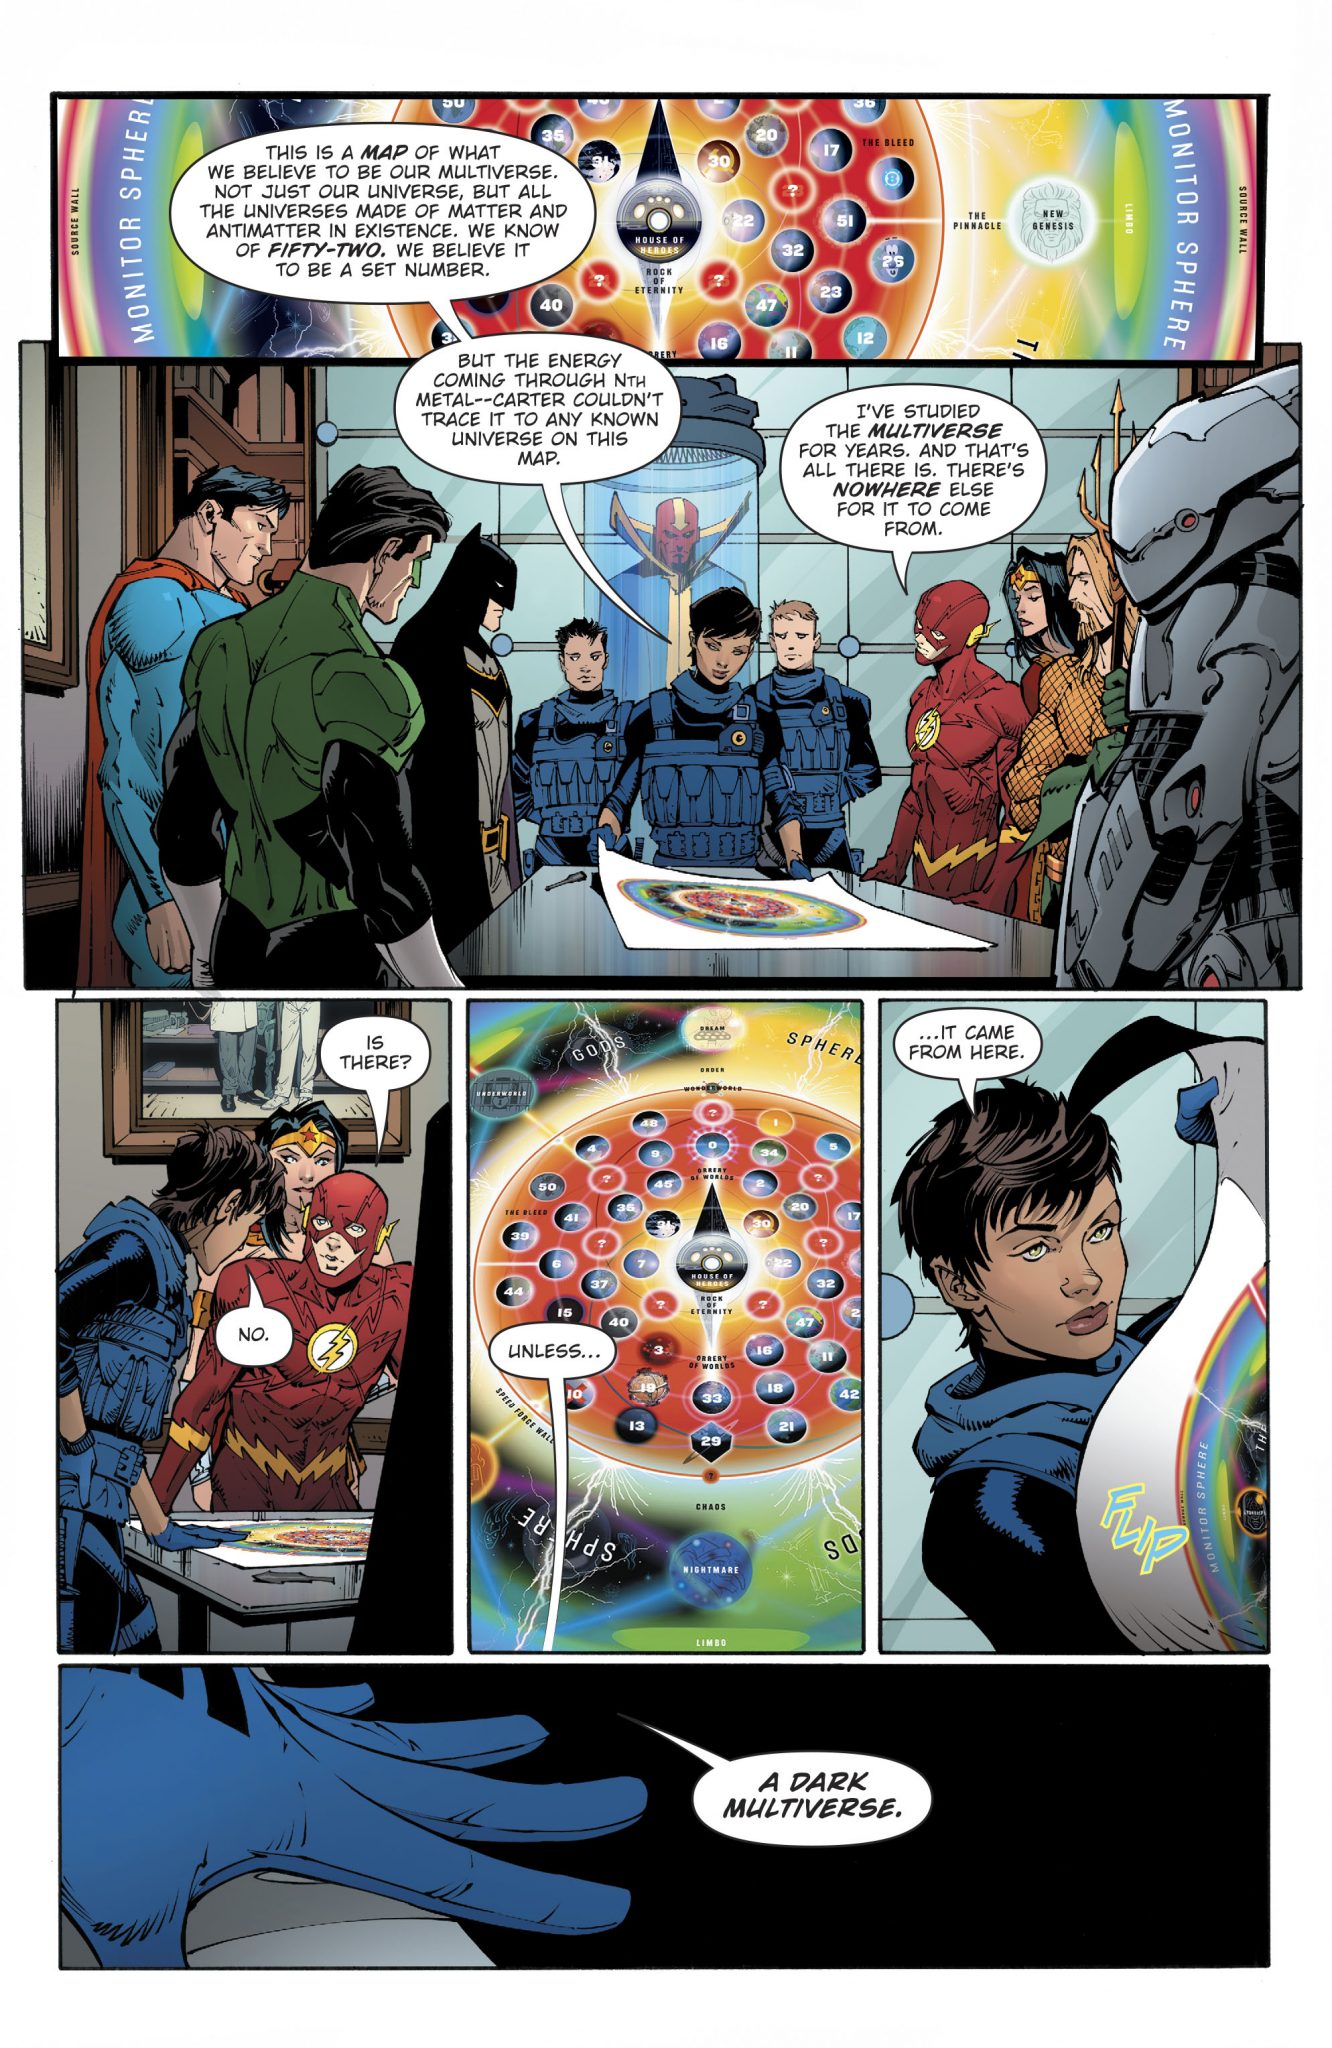 Noites de Trevas - O novo Multiverso da DC Comics